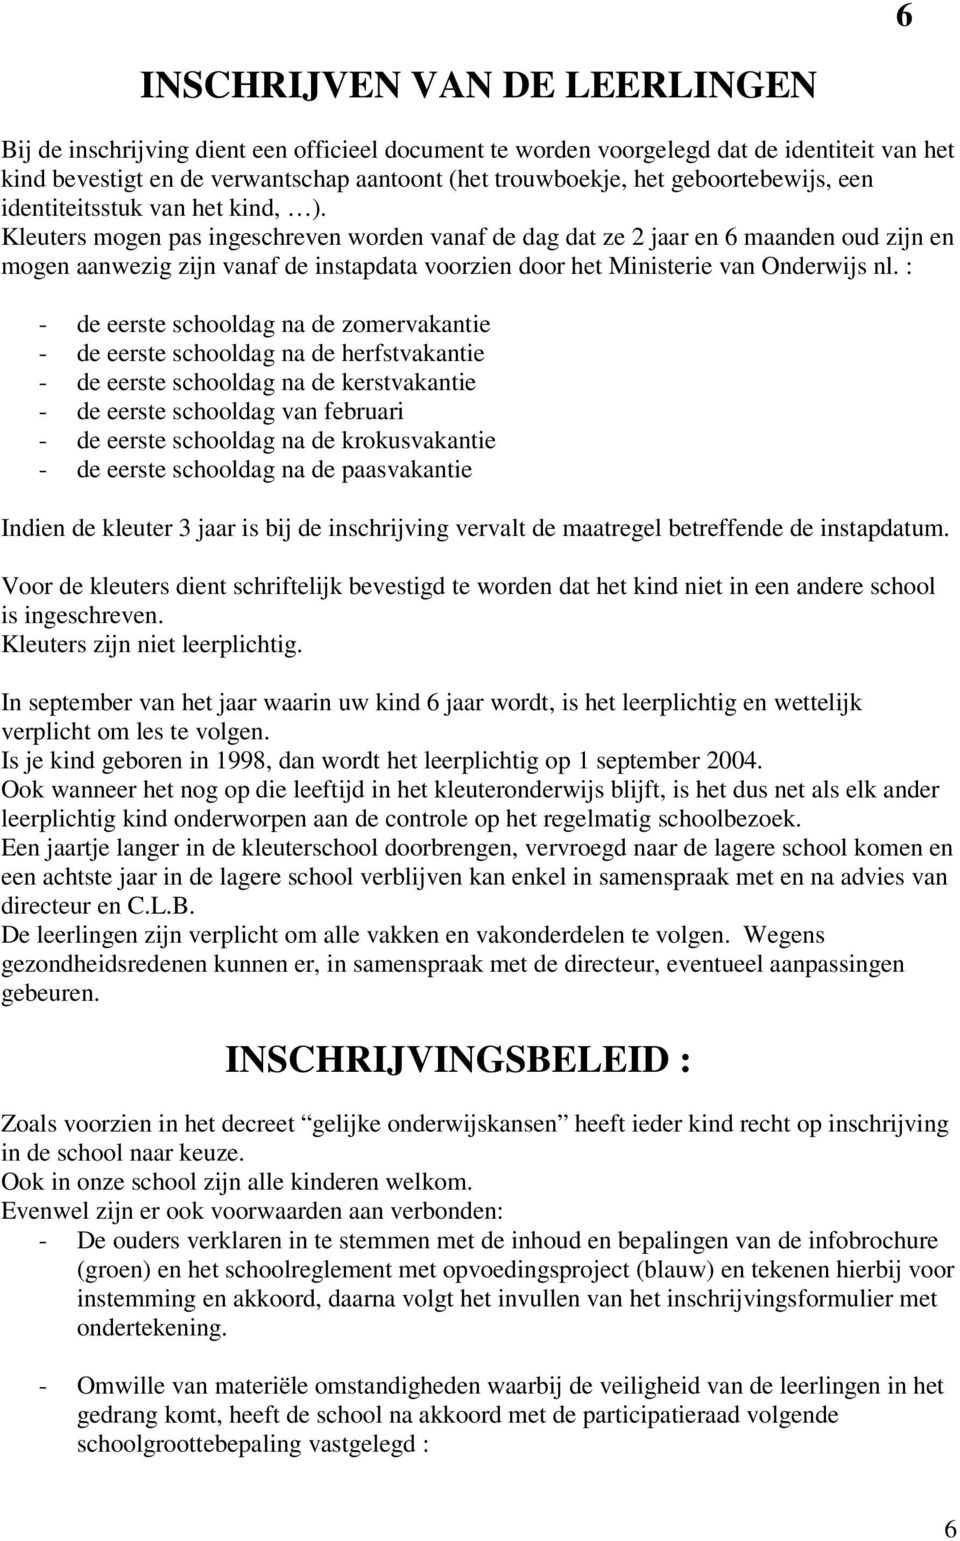 Kleuters mogen pas ingeschreven worden vanaf de dag dat ze 2 jaar en 6 maanden oud zijn en mogen aanwezig zijn vanaf de instapdata voorzien door het Ministerie van Onderwijs nl.